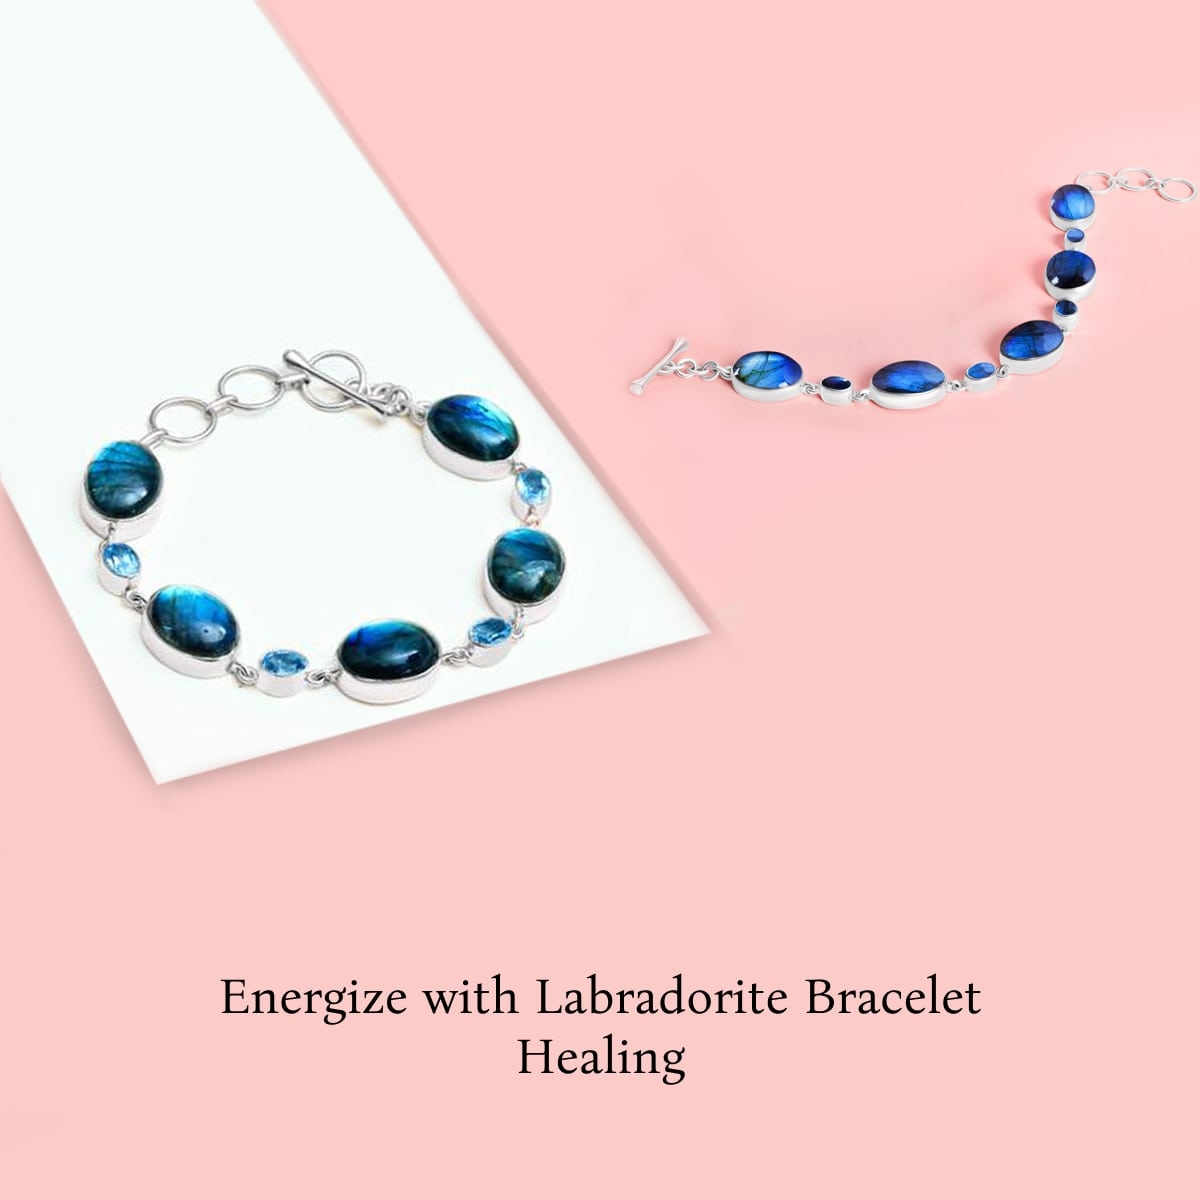 Healing properties of Labradorite bracelet